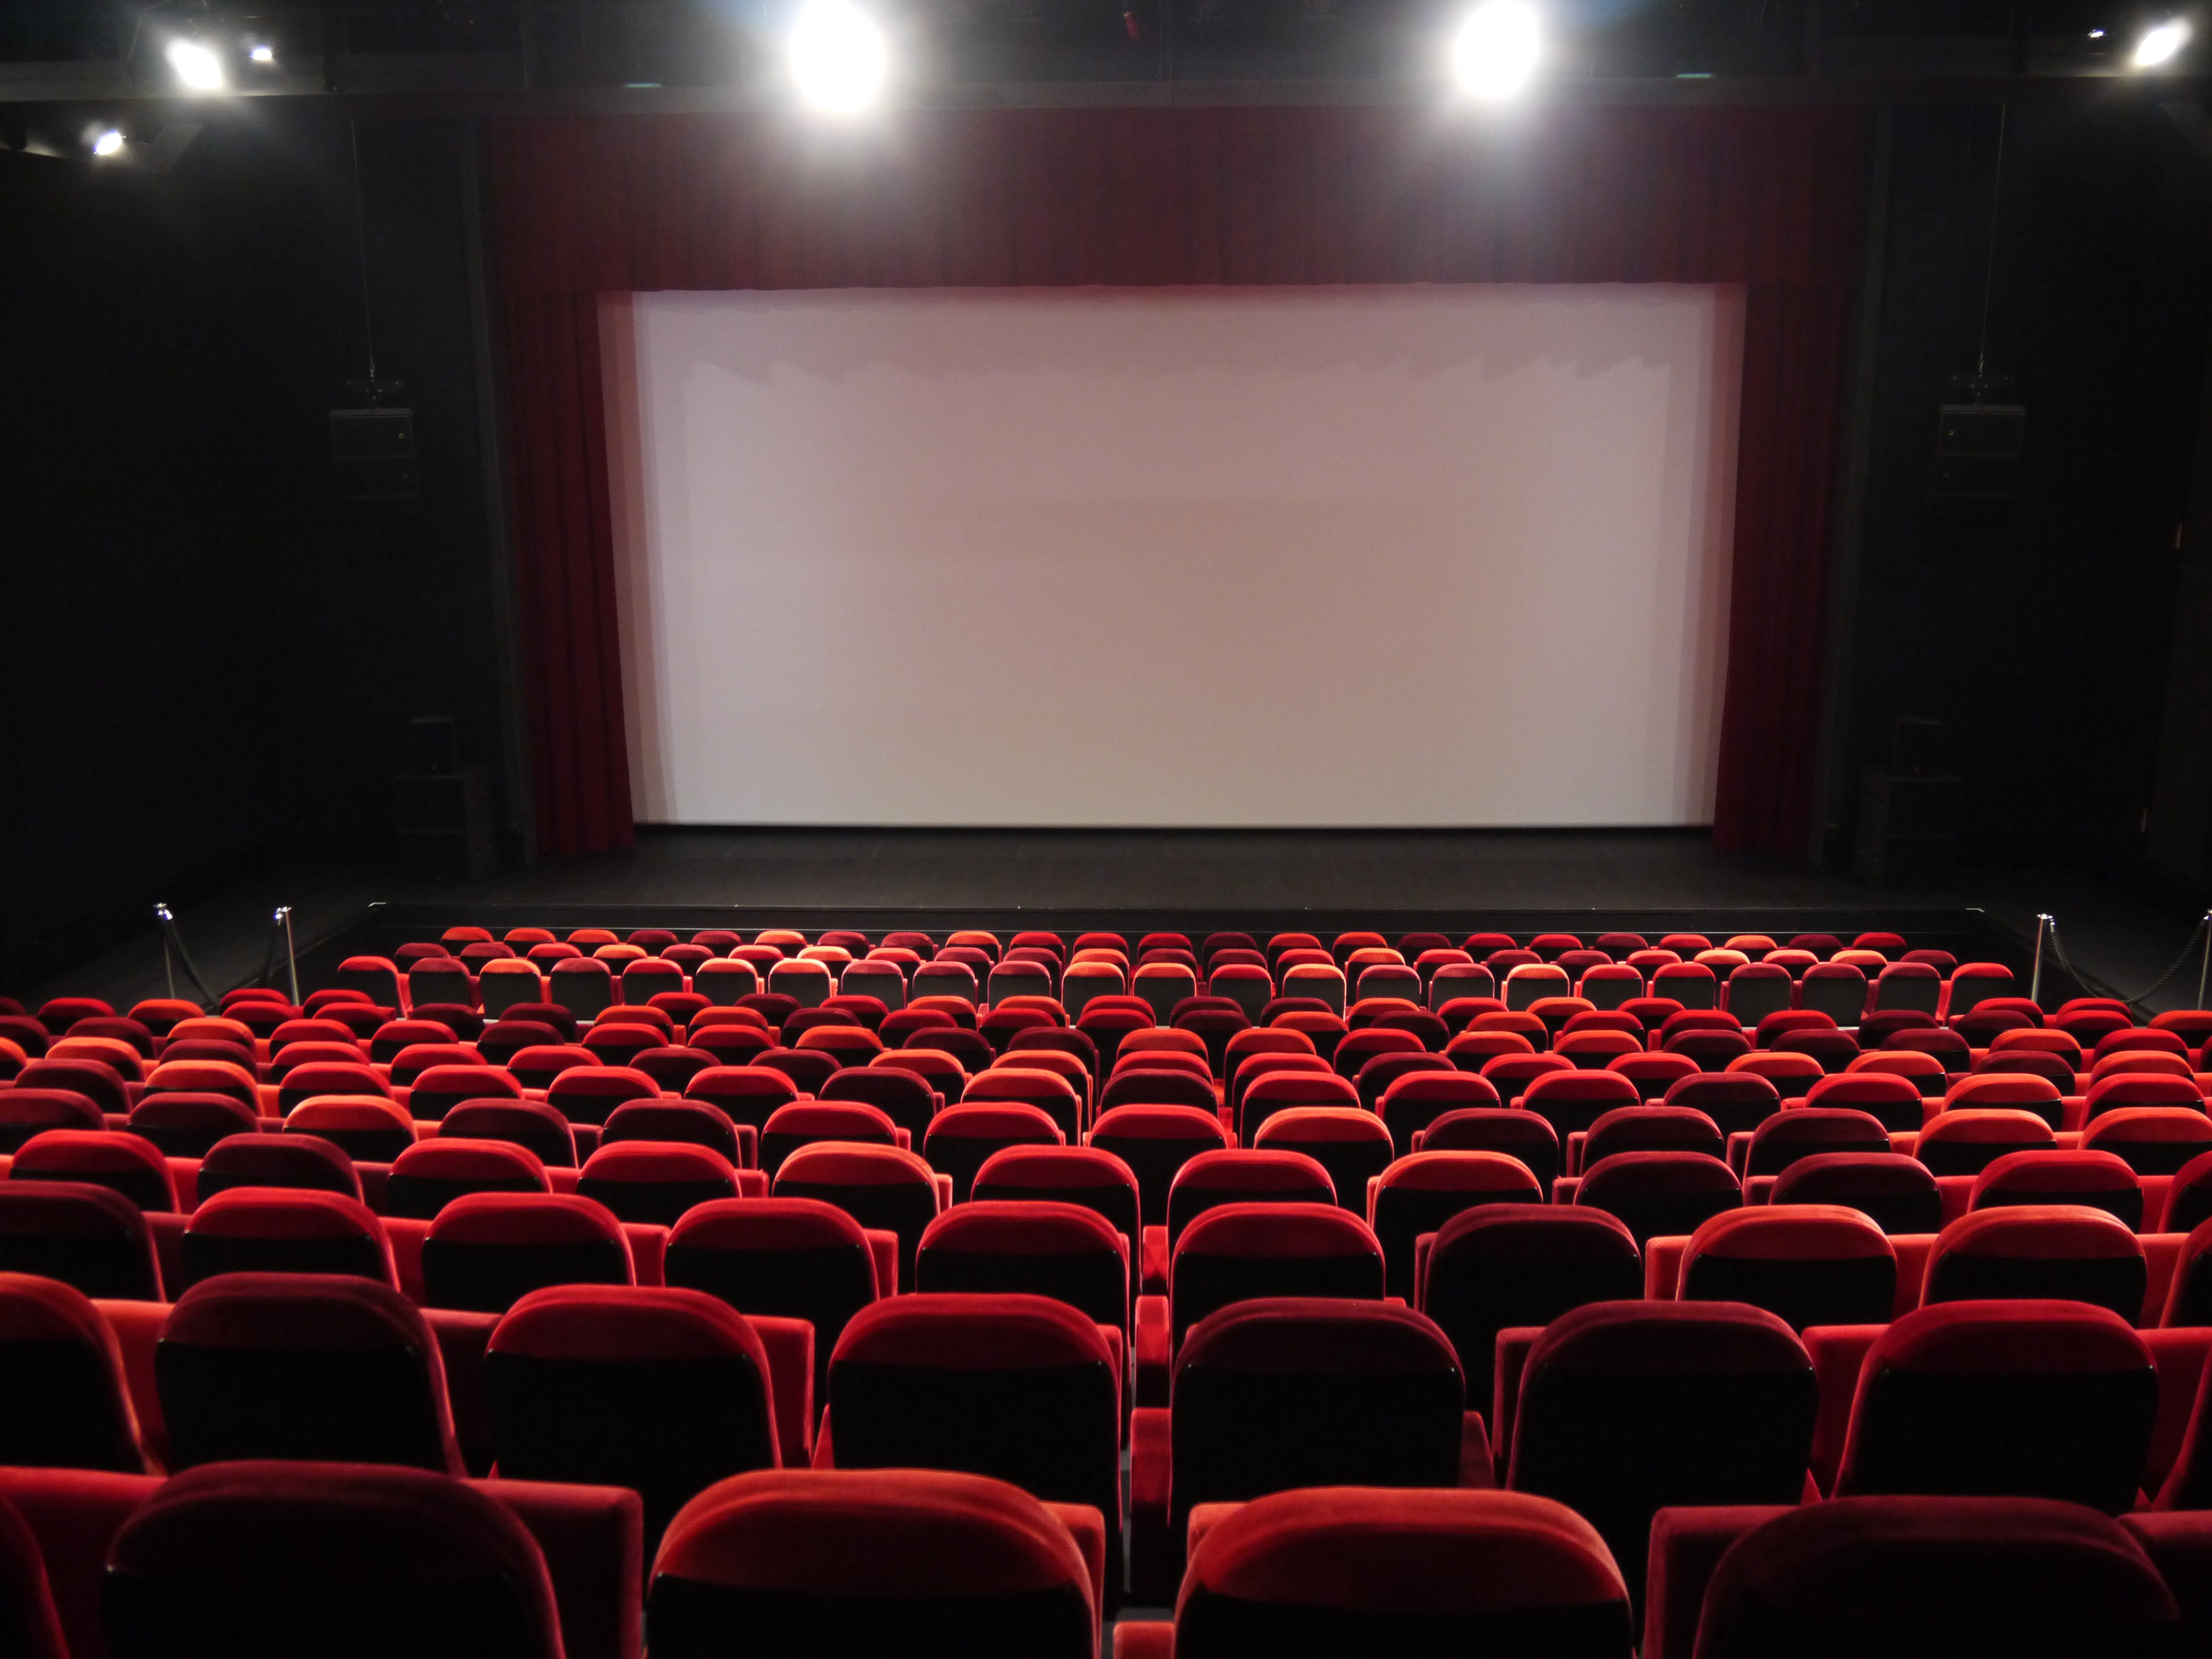 La place de cinéma coûte-t-elle vraiment plus cher qu'avant ? - Boxoffice  Pro